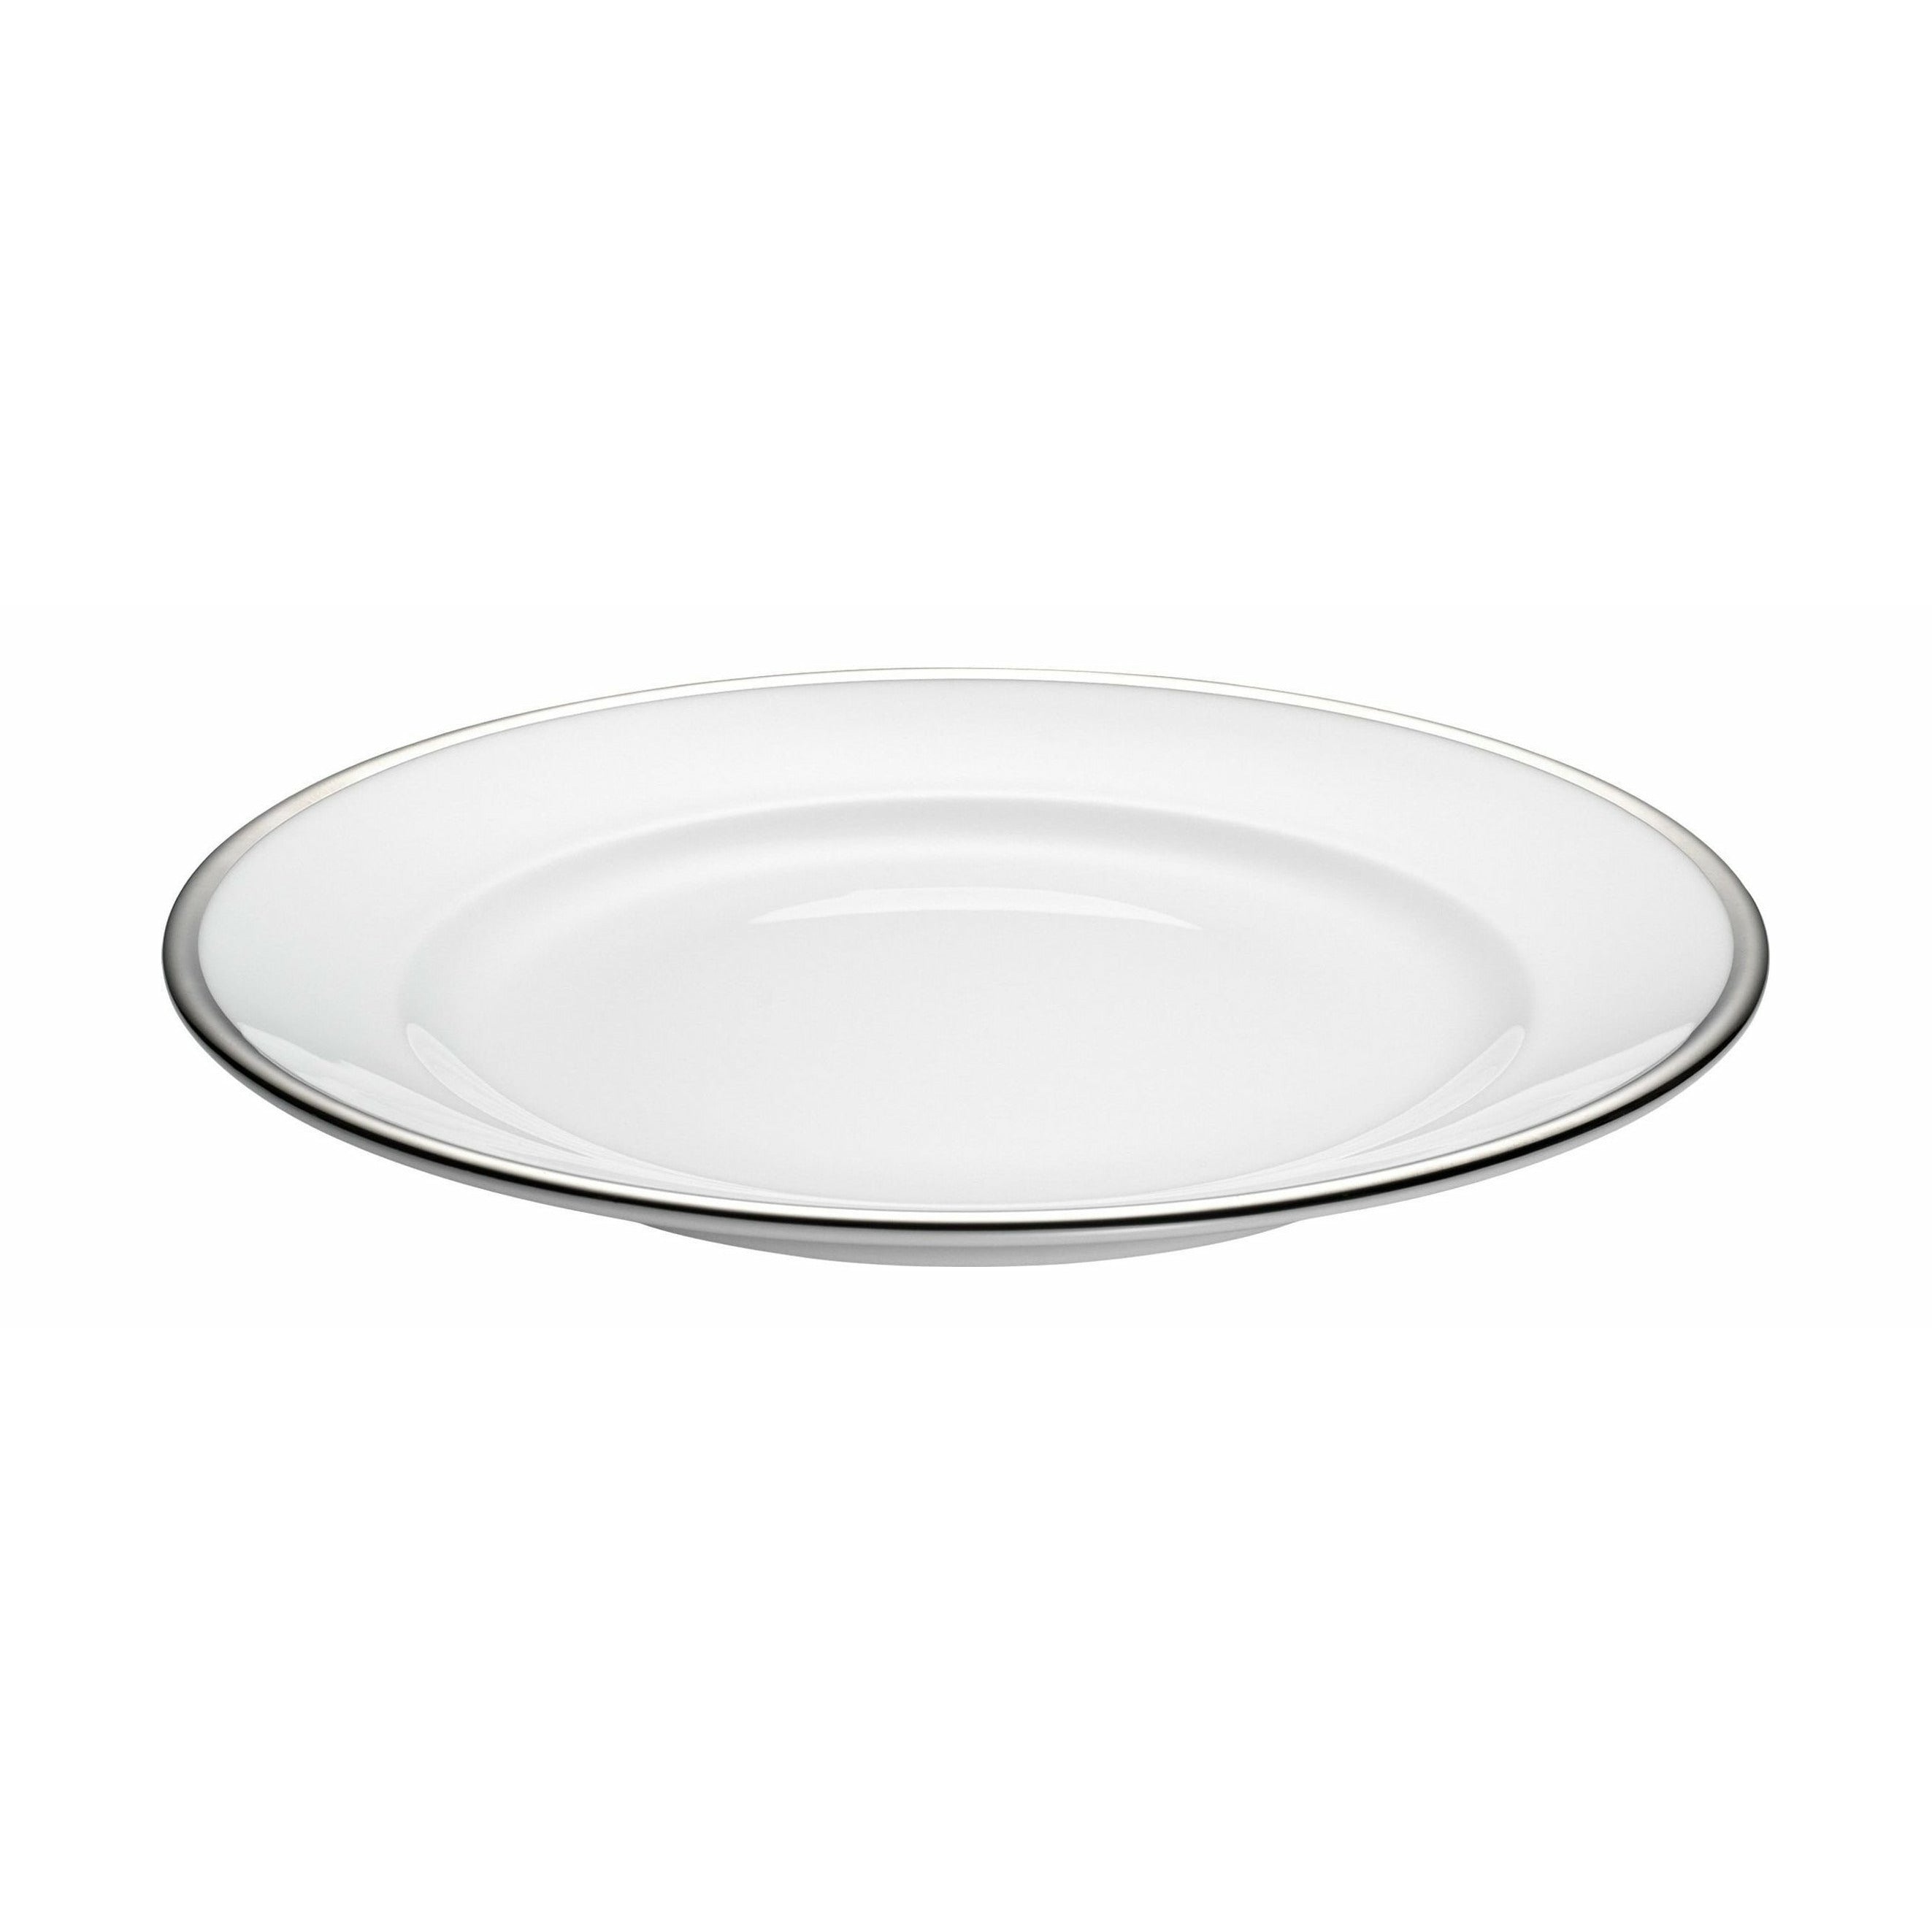 Pillivuyt Assiette de bistrot Ø 24 cm, blanc / argent